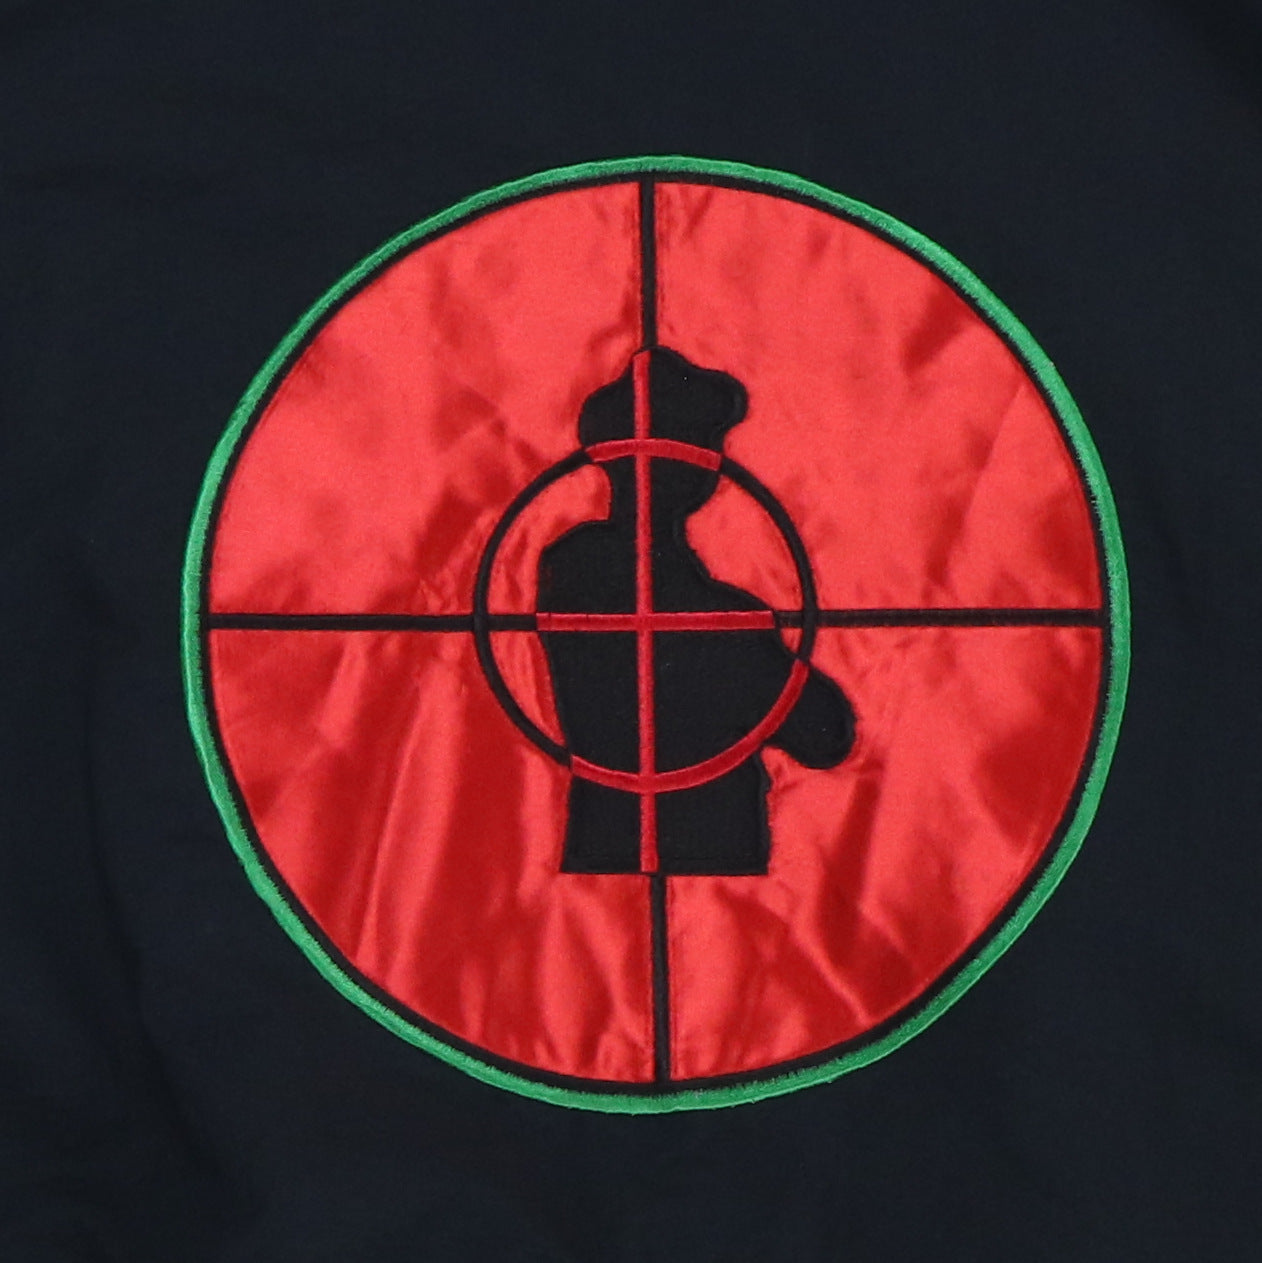 1991 Public Enemy Offical Trooper Tour Jacket